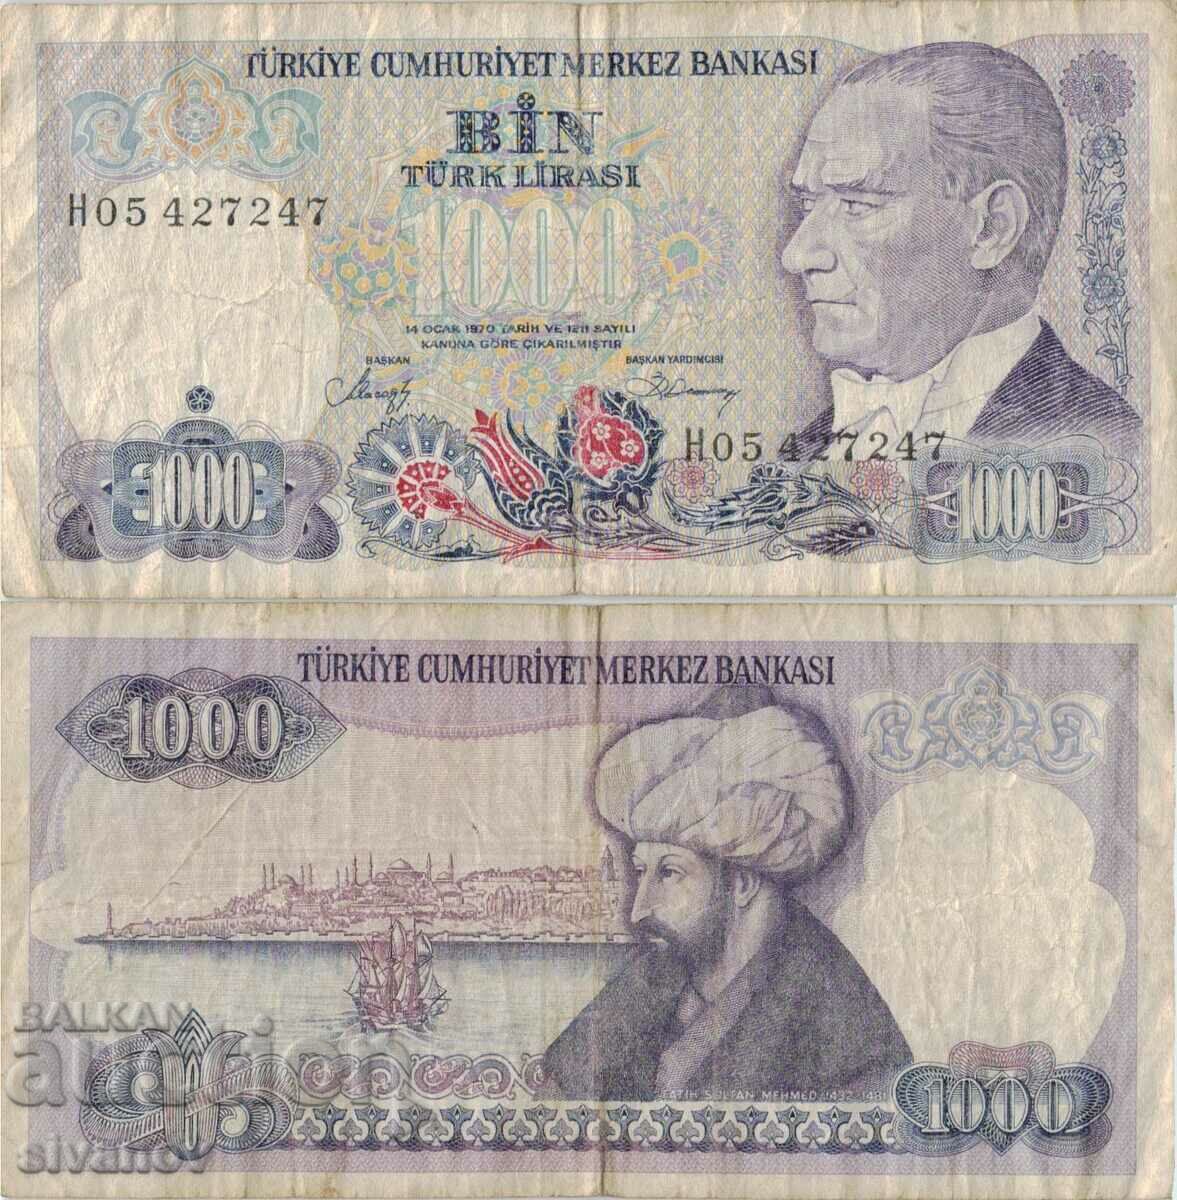 Τραπεζογραμμάτιο 1000 λιρών Τουρκίας 1970 (1986) έτος #5184